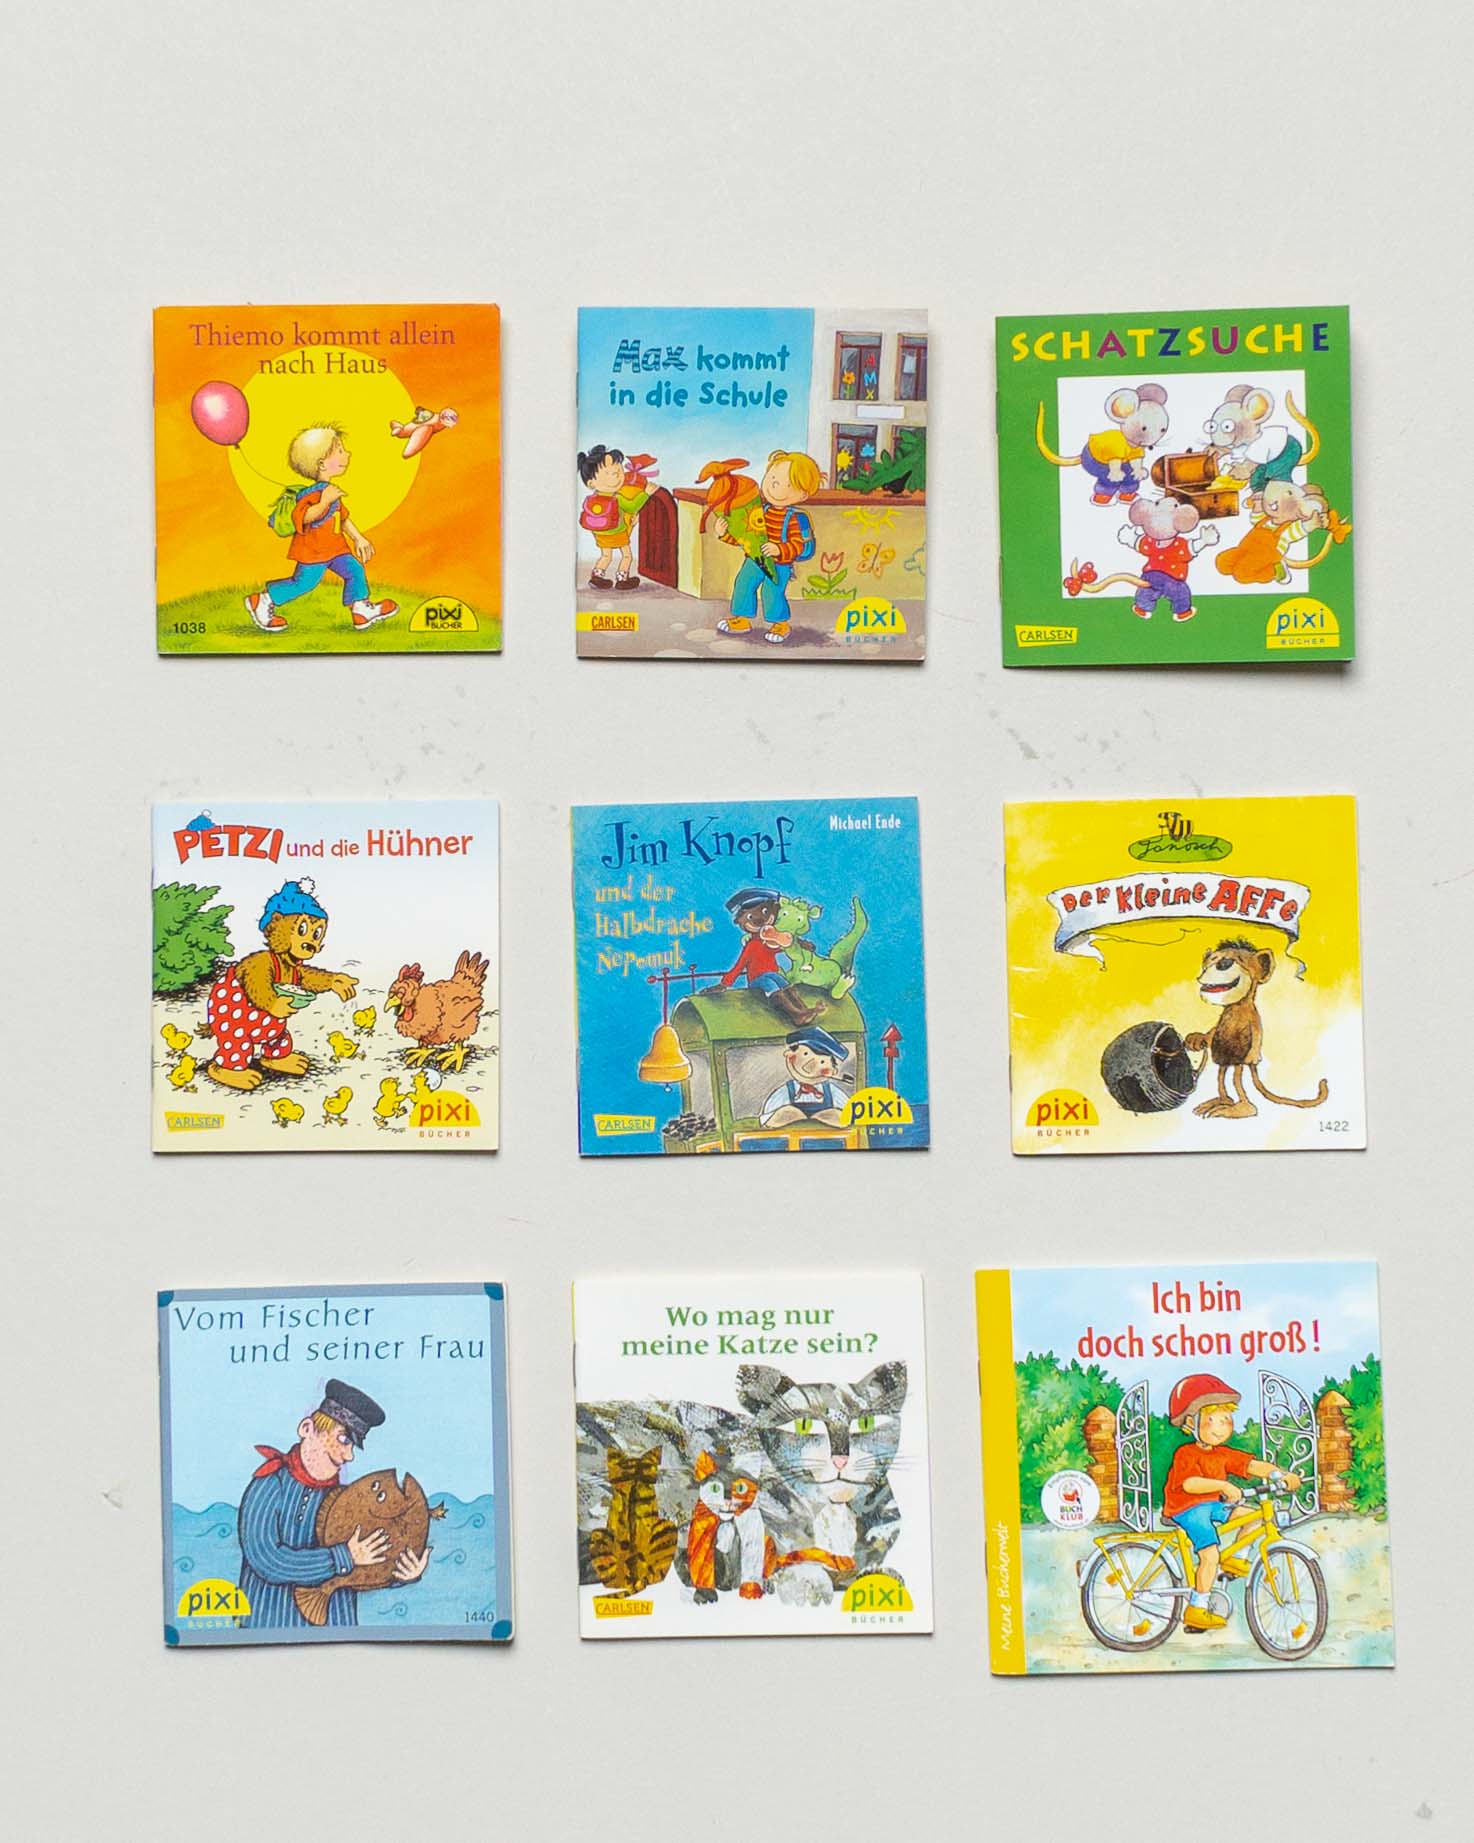 9 Pixi Bücher – Janosch Jim Knopf Katze Radfahren Minibücher Set